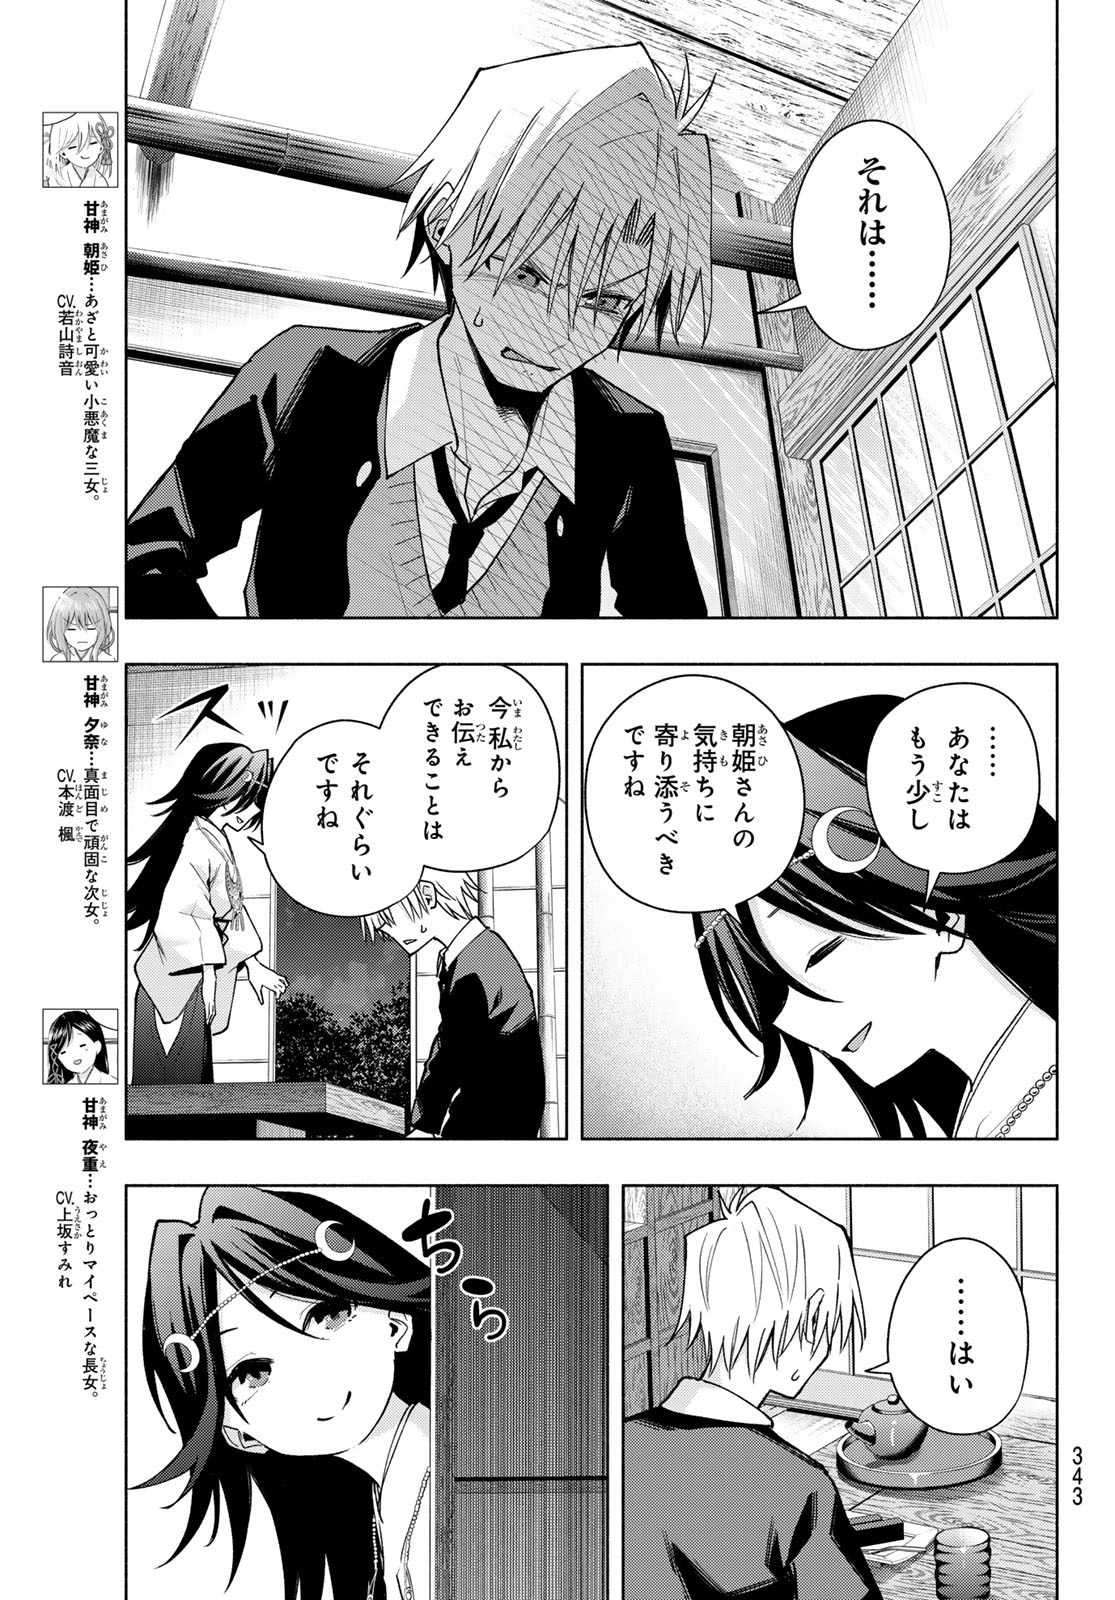 Amagami-san Chi no Enmusubi - Chapter 136 - Page 5